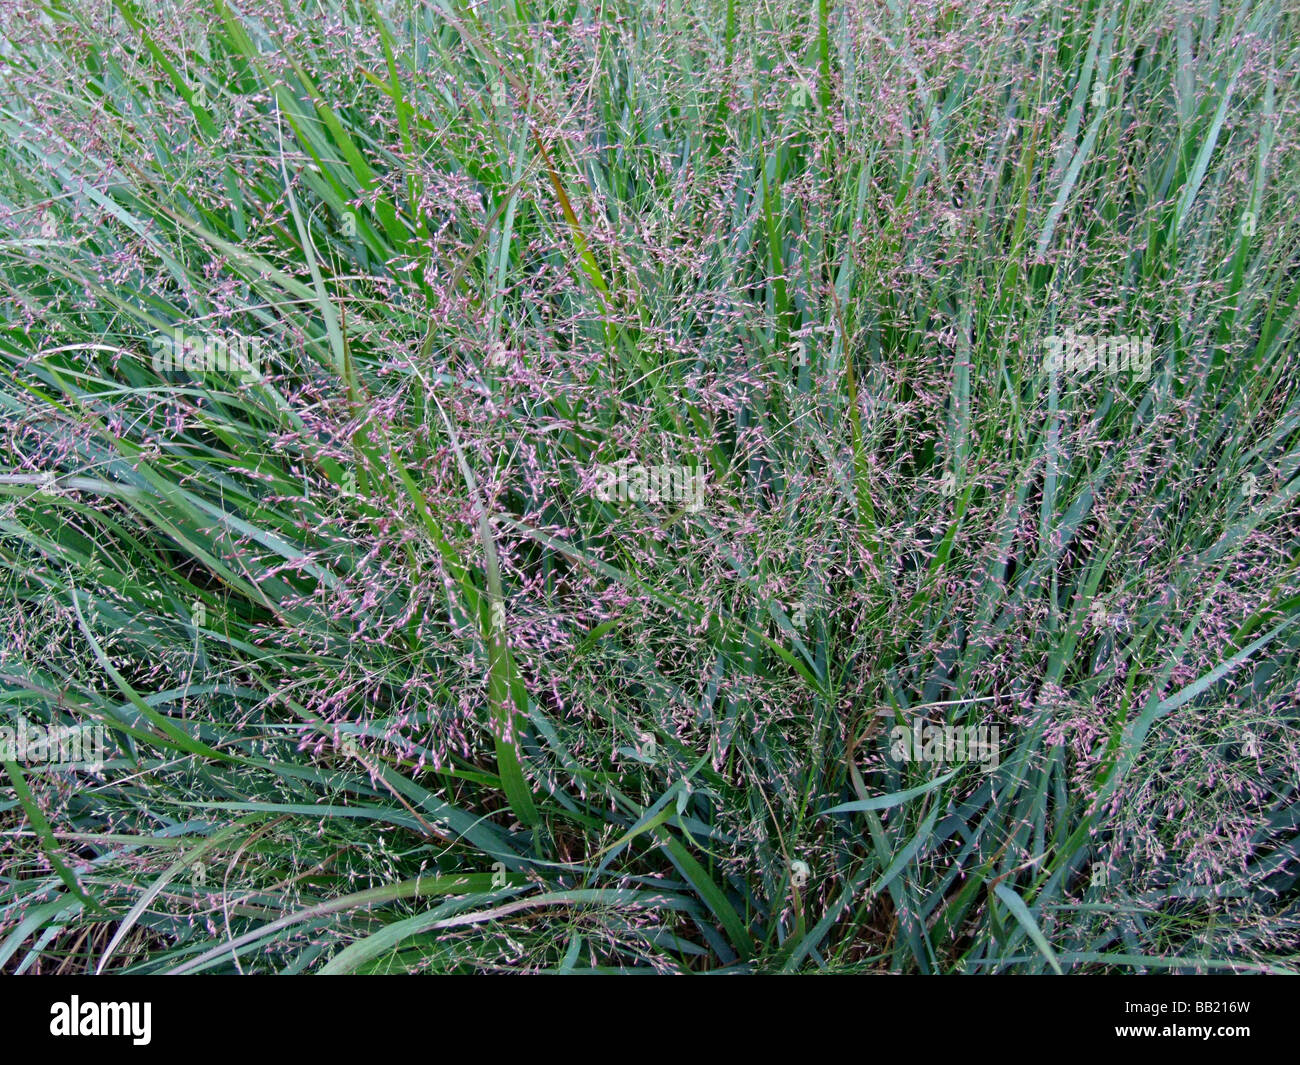 Panicum virgatum 'Warrior' or Switch grass Stock Photo